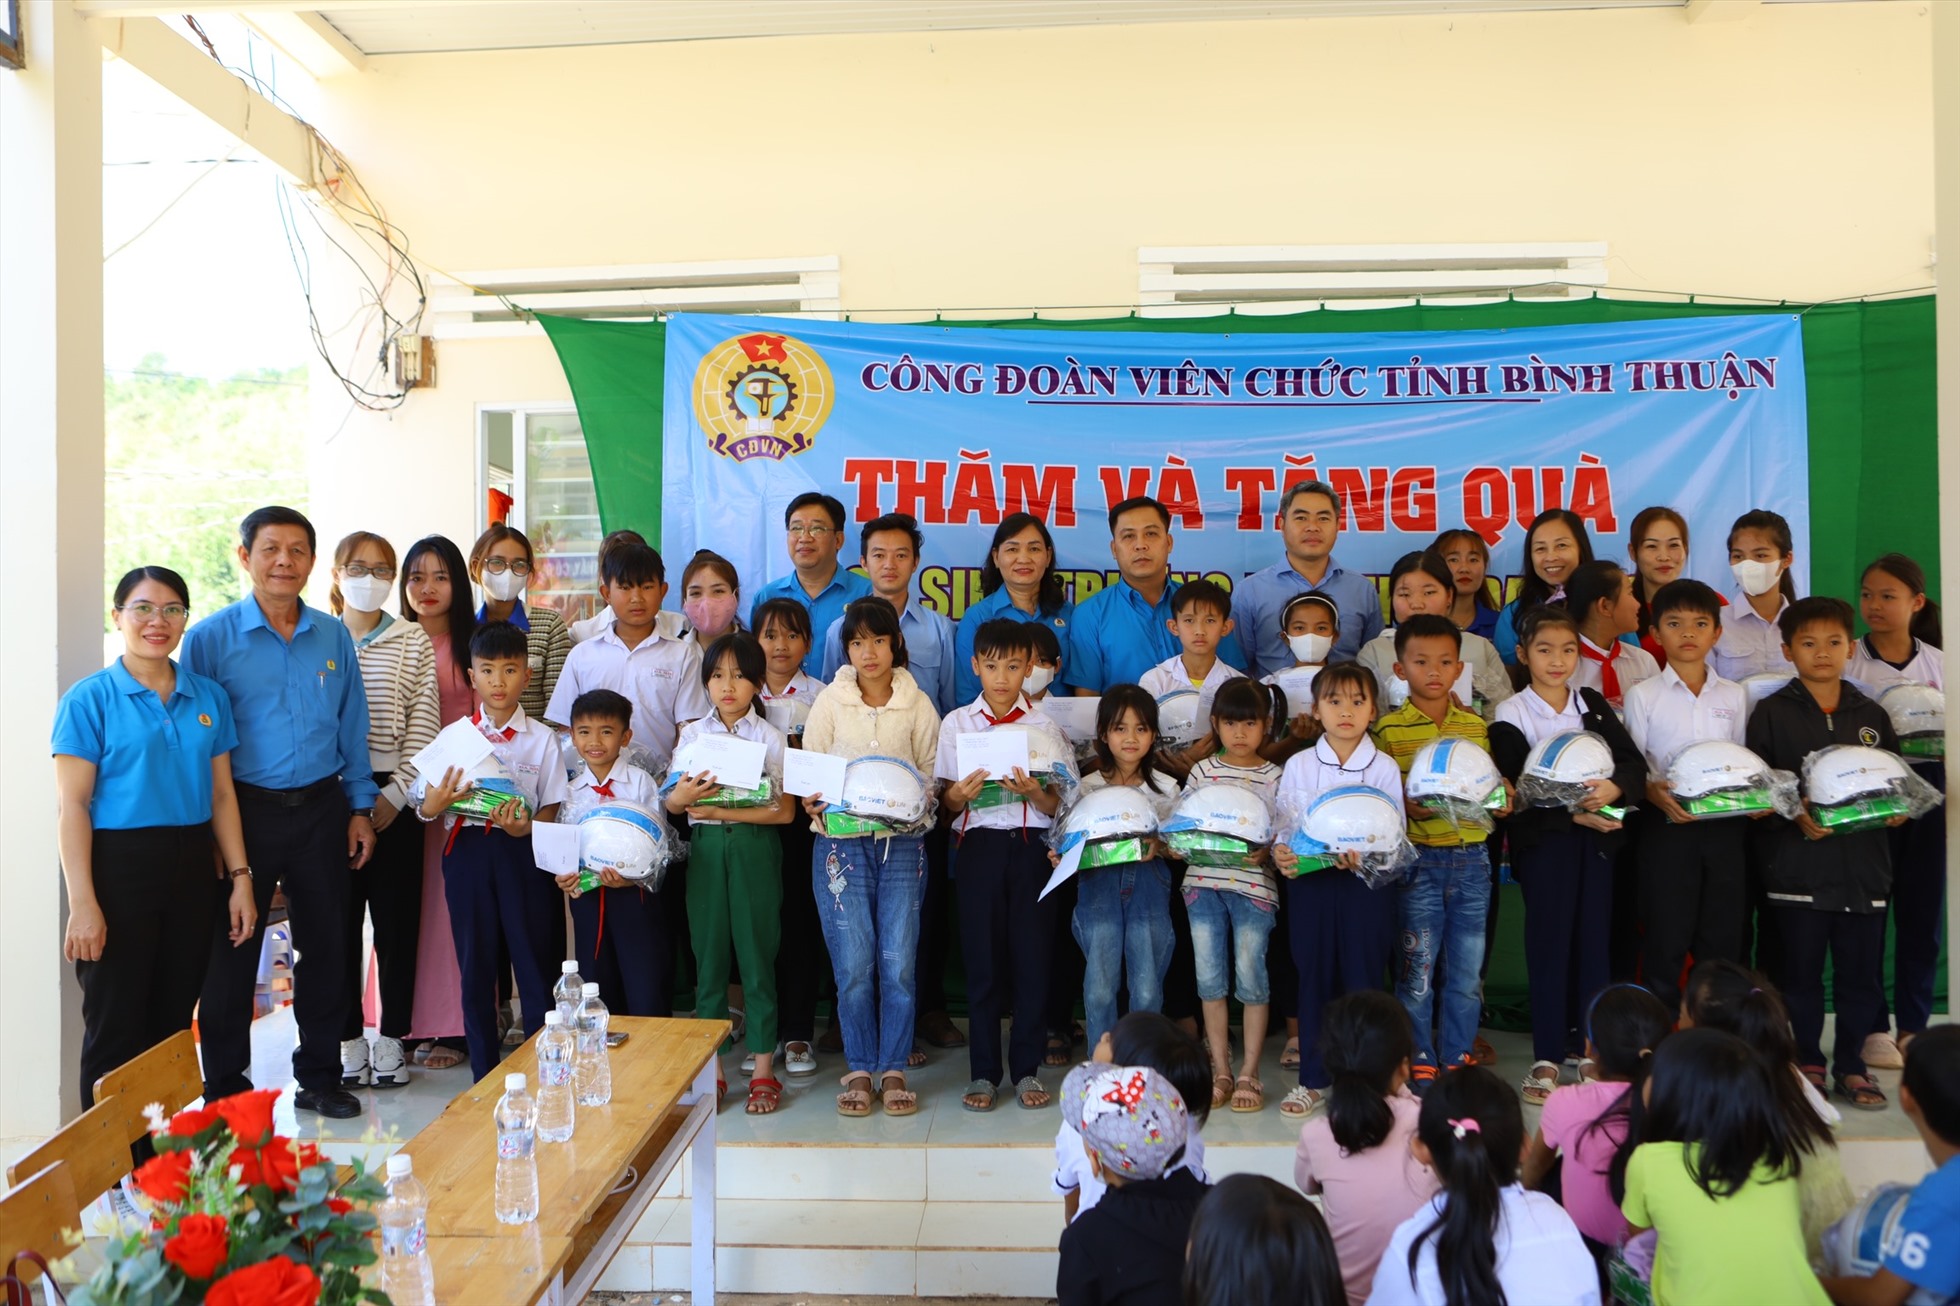 Đoàn công tác của CĐVC tỉnh Bình Thuận trao quà cho các em học sinh Trường tiểu học Đa Mi 2. Ảnh: Duy Tuấn